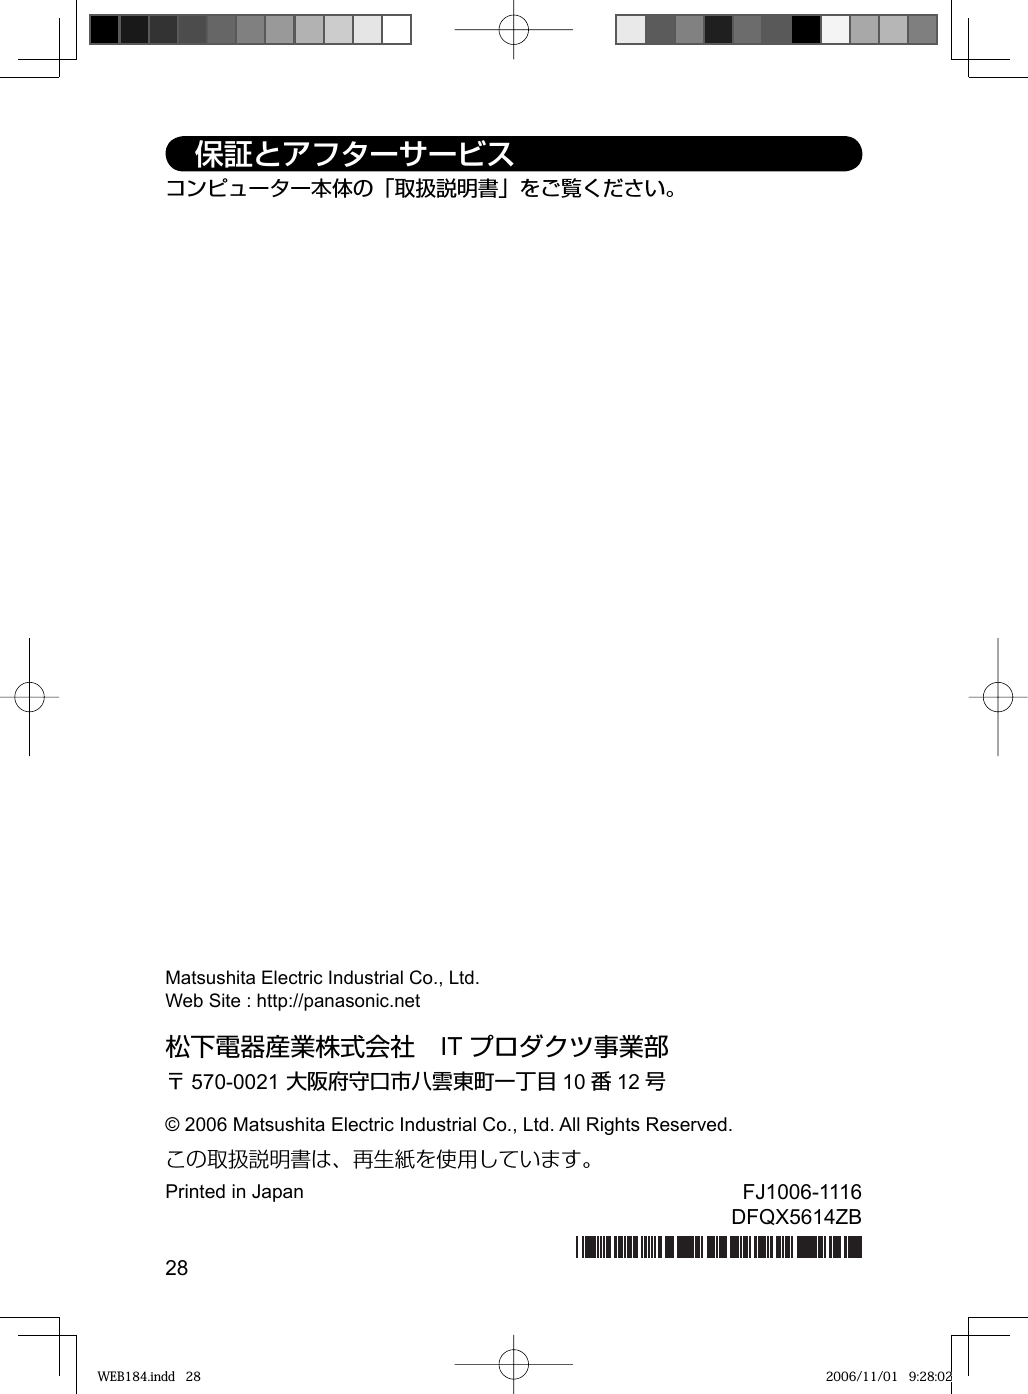 28松下電器産業株式会社 IT プロダクツ事業部〒570-0021 大阪府守口市八雲東町一丁目 10 番12 号© 2006 Matsushita Electric Industrial Co., Ltd. All Rights Reserved.この取扱説明書は、再生紙を使用しています。Printed in Japan FJ1006-1116DFQX5614ZBコンピューター本体の「取扱説明書」をご覧ください。 保証とアフターサービスMatsushita Electric Industrial Co., Ltd.Web Site : http://panasonic.netWEB184.indd   28WEB184.indd   28 2006/11/01   9:28:022006/11/01   9:28:02